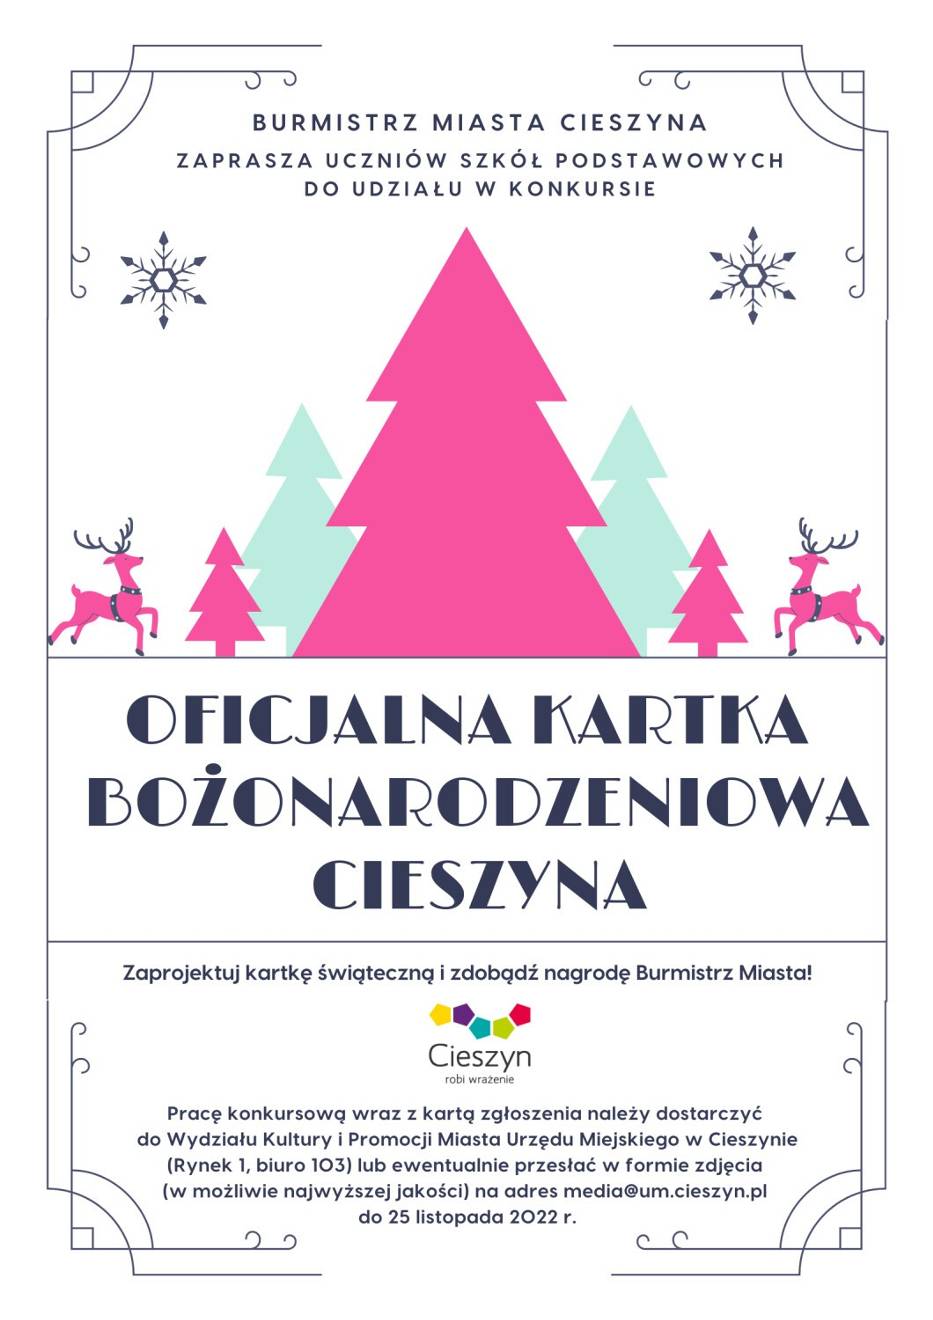 Konkurs na oficjalną kartkę bożonarodzeniową Cieszyna 2022, plakat